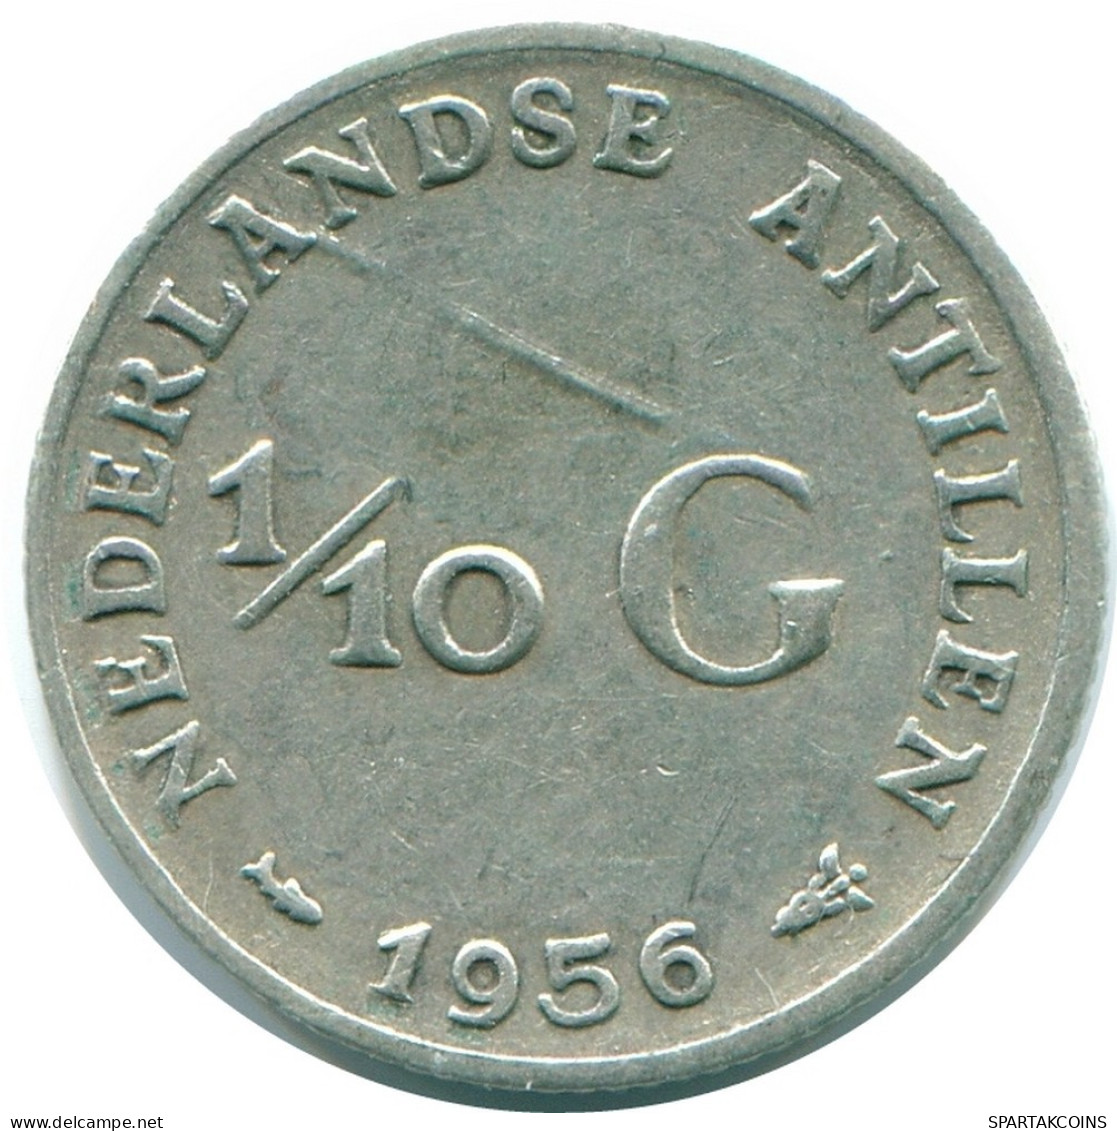 1/10 GULDEN 1956 NIEDERLÄNDISCHE ANTILLEN SILBER Koloniale Münze #NL12079.3.D.A - Niederländische Antillen